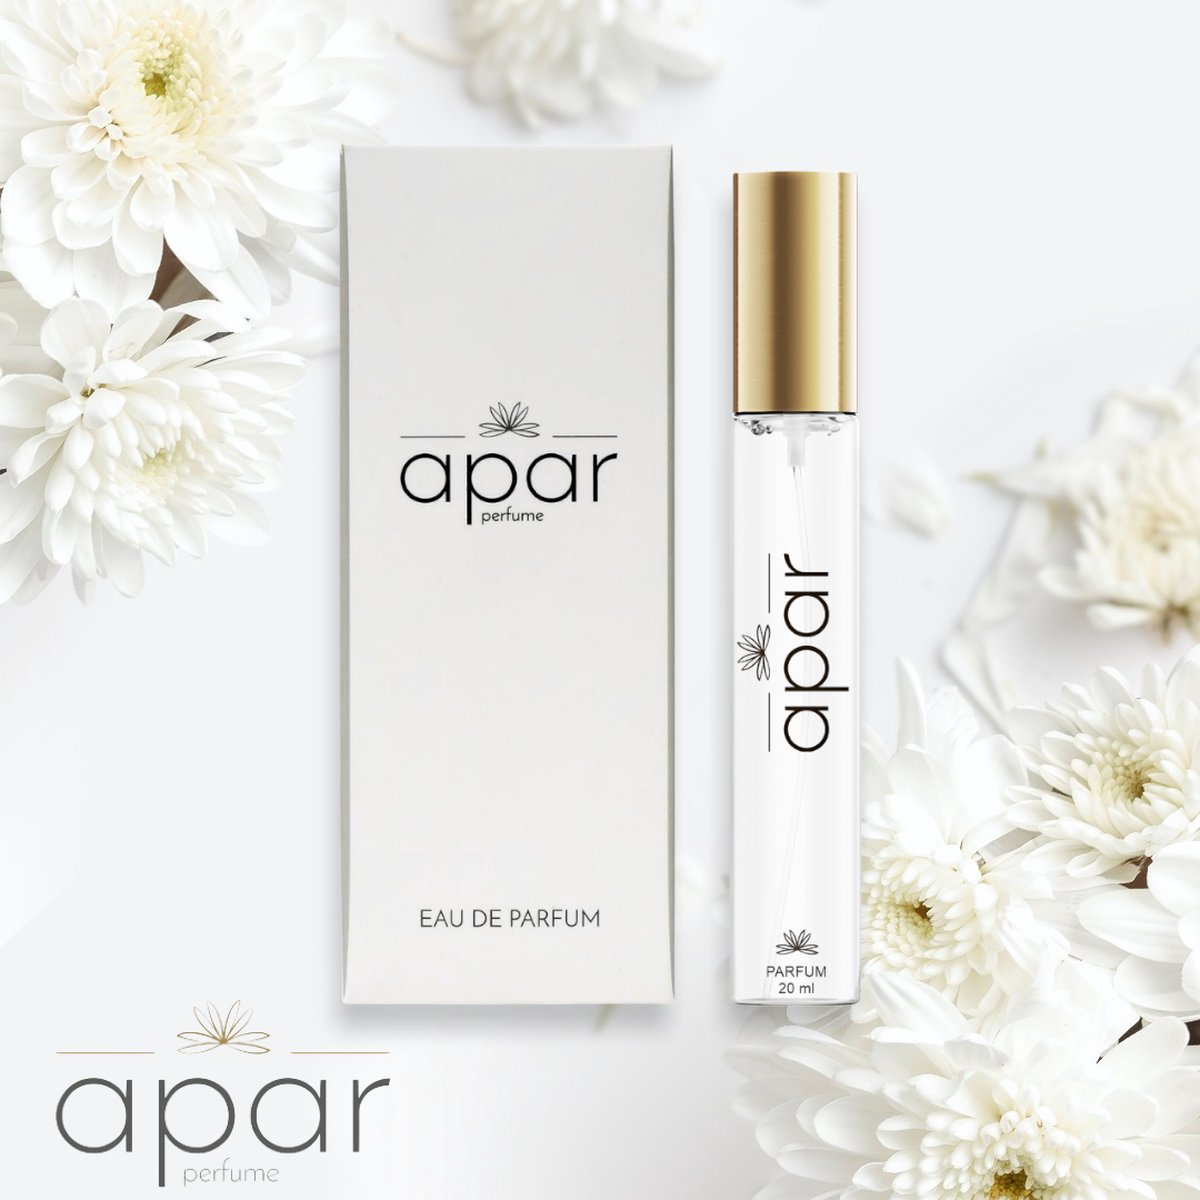 ❤Dure merk geuren voor een eerlijke prijs❤APAR Parfum EDP - 20ml - Nummer F210 Standard -